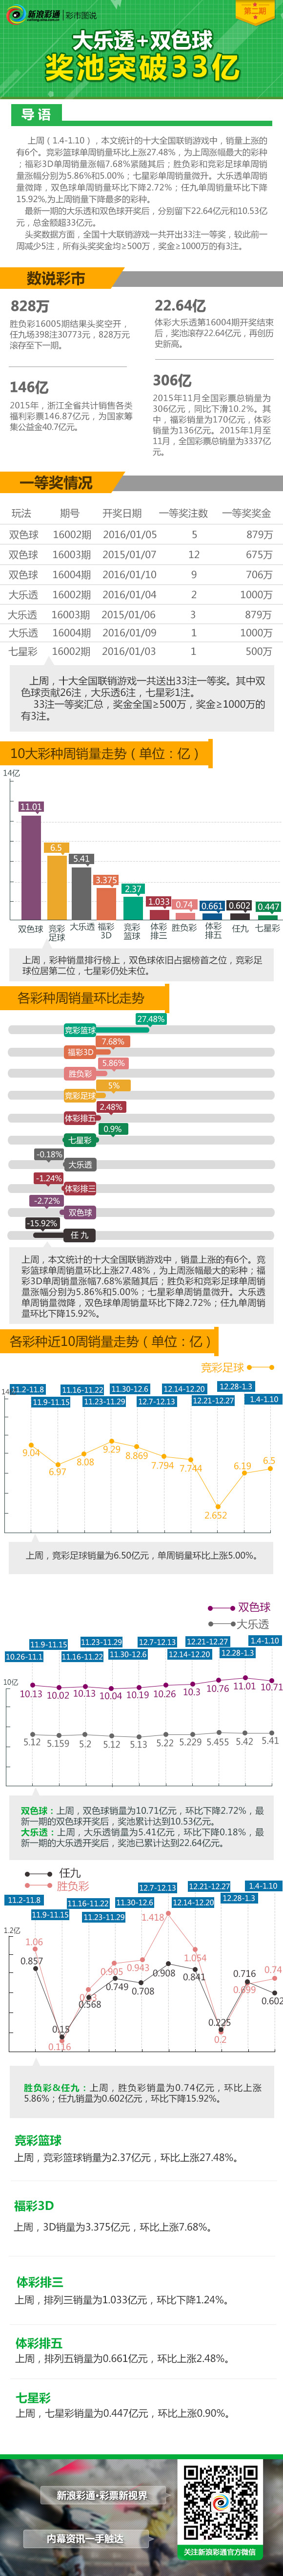 彩市图说第2期：大乐透+双色球奖池突破33亿